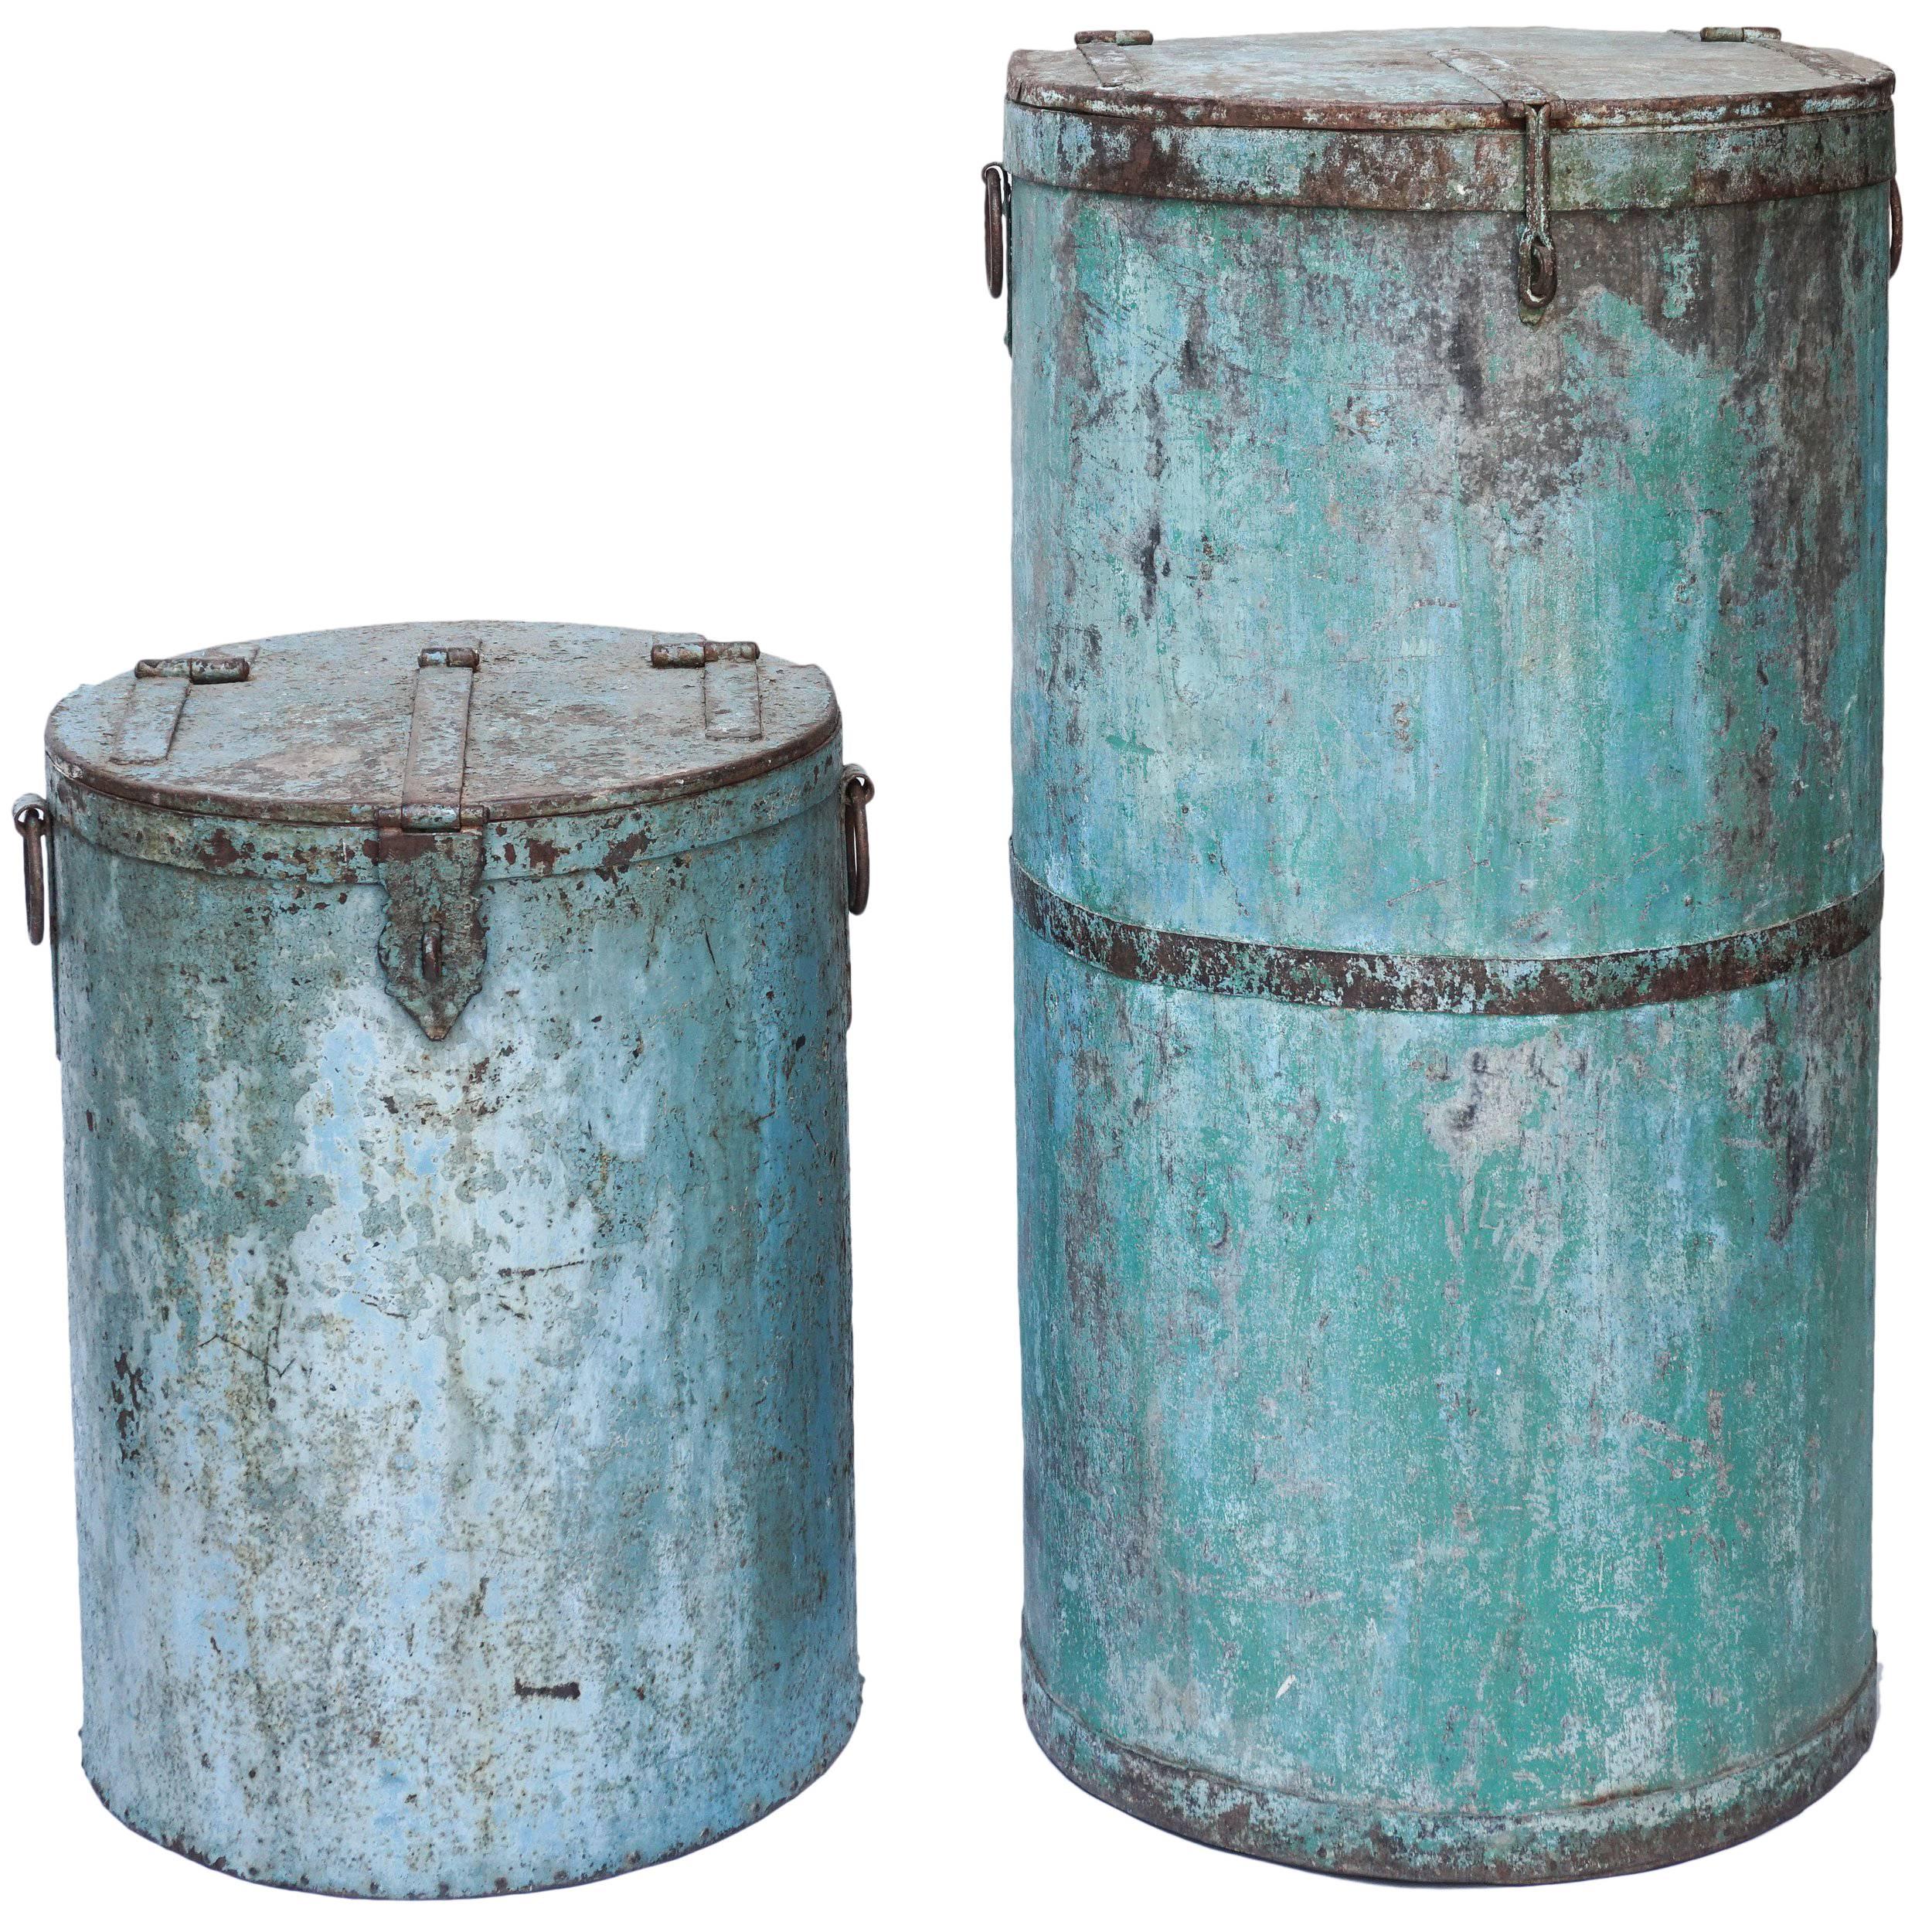 Two Large Vintage Metal Barrels